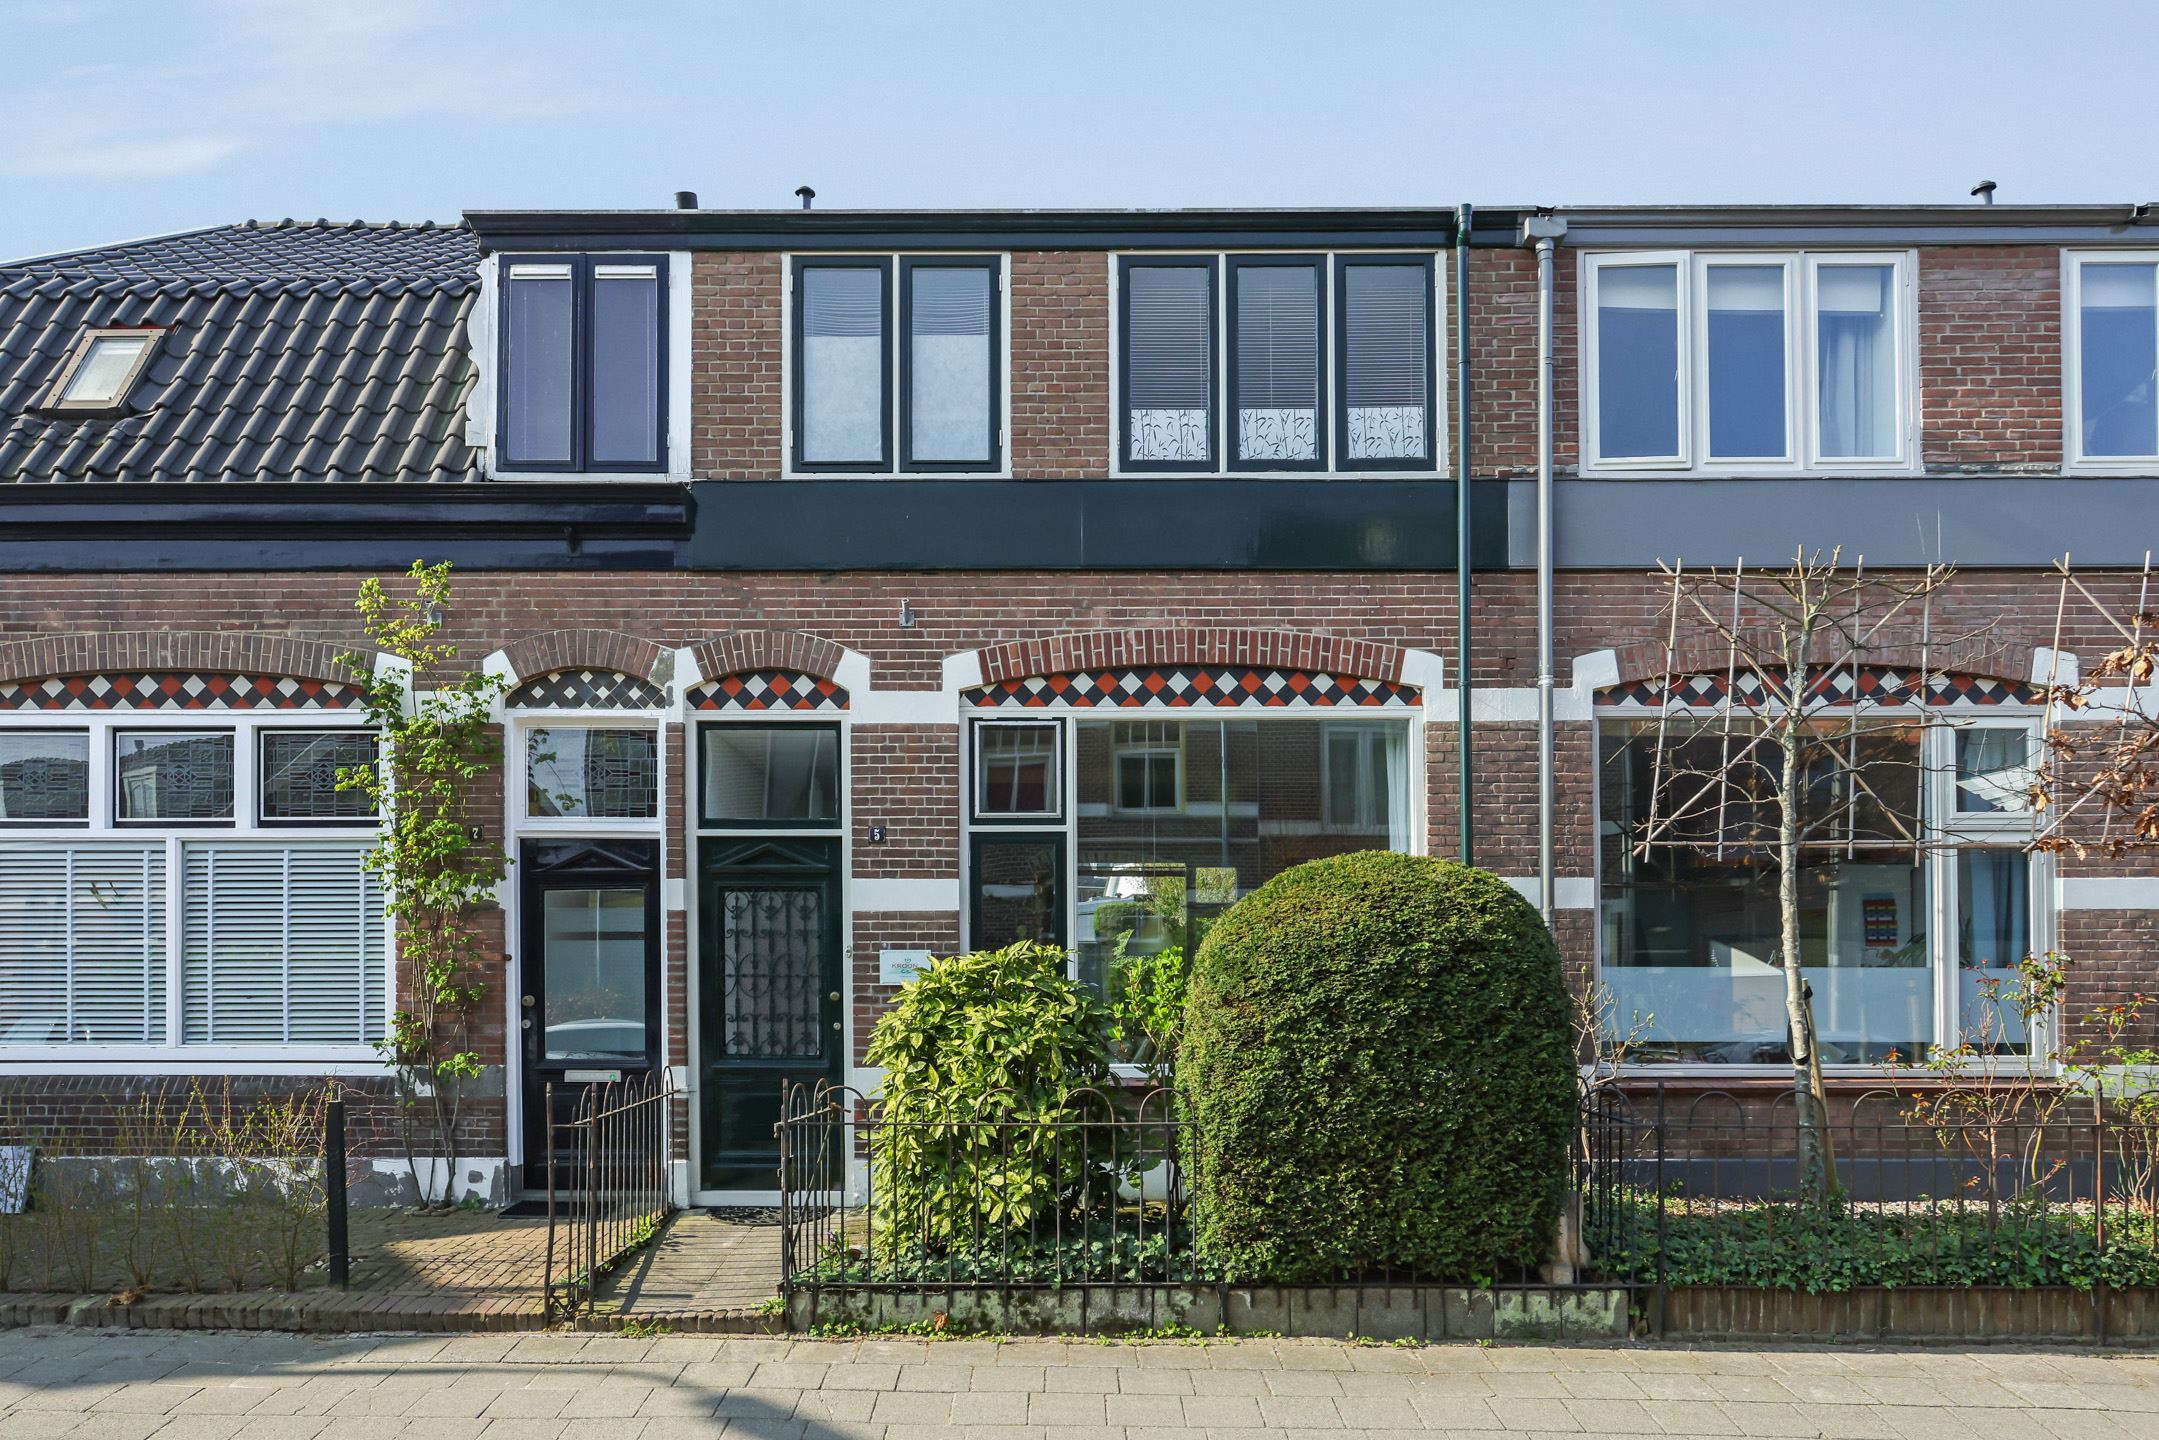 Leenaert Nicasiusstraat  5 in Vermeerkwartier / Leusderkwartier / Bergkwartier / Amersfoort, Amersfoort